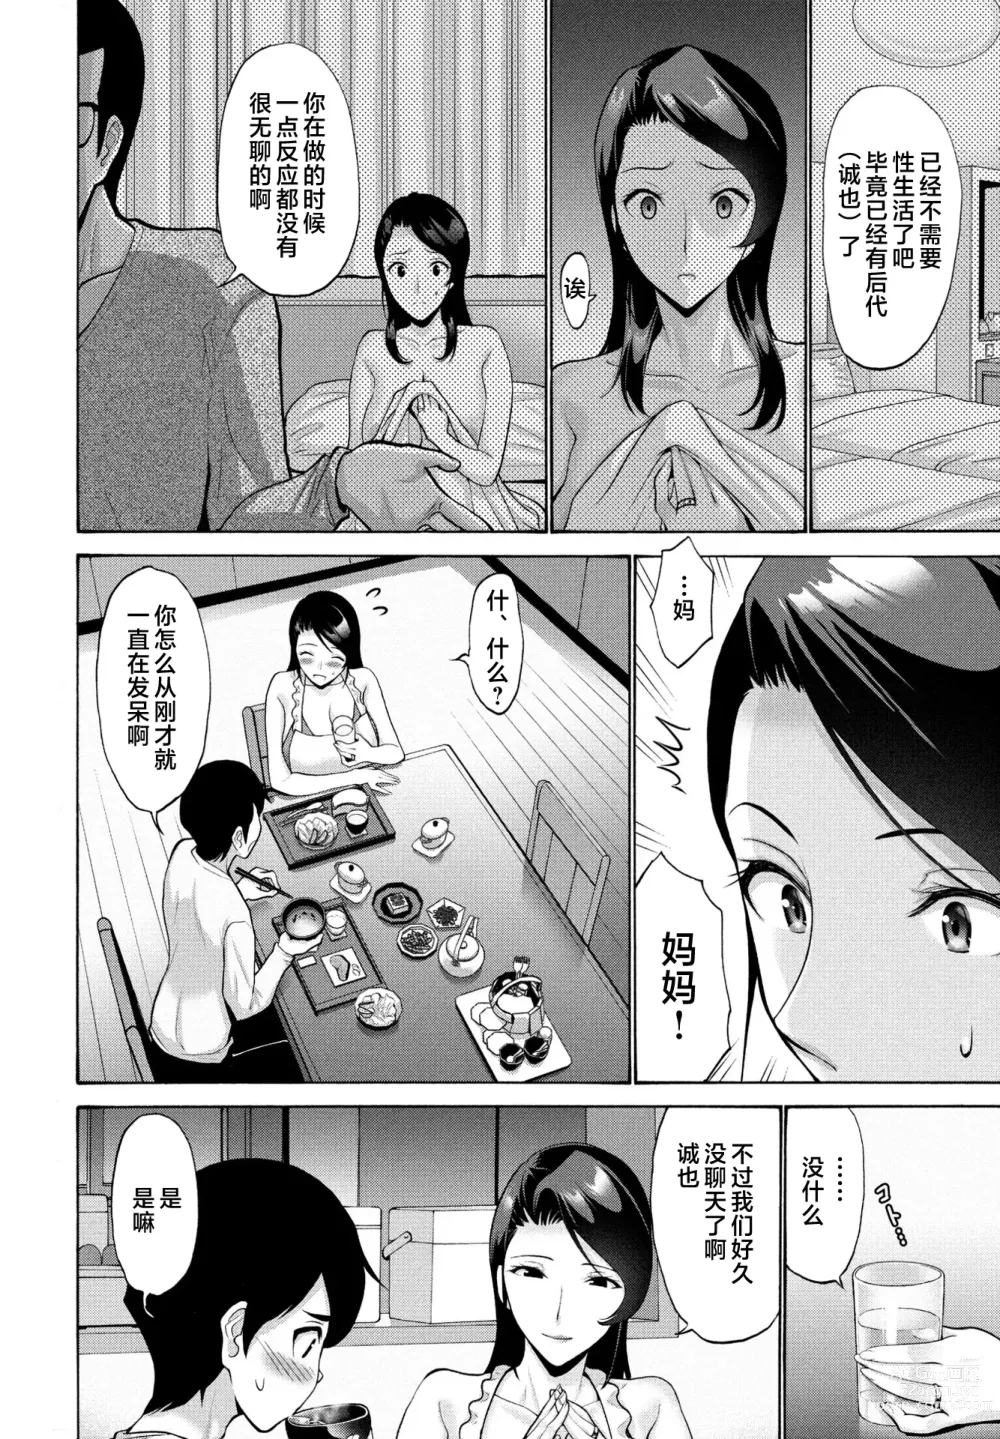 Page 2 of manga Hamayuri Club Ch. 1-3